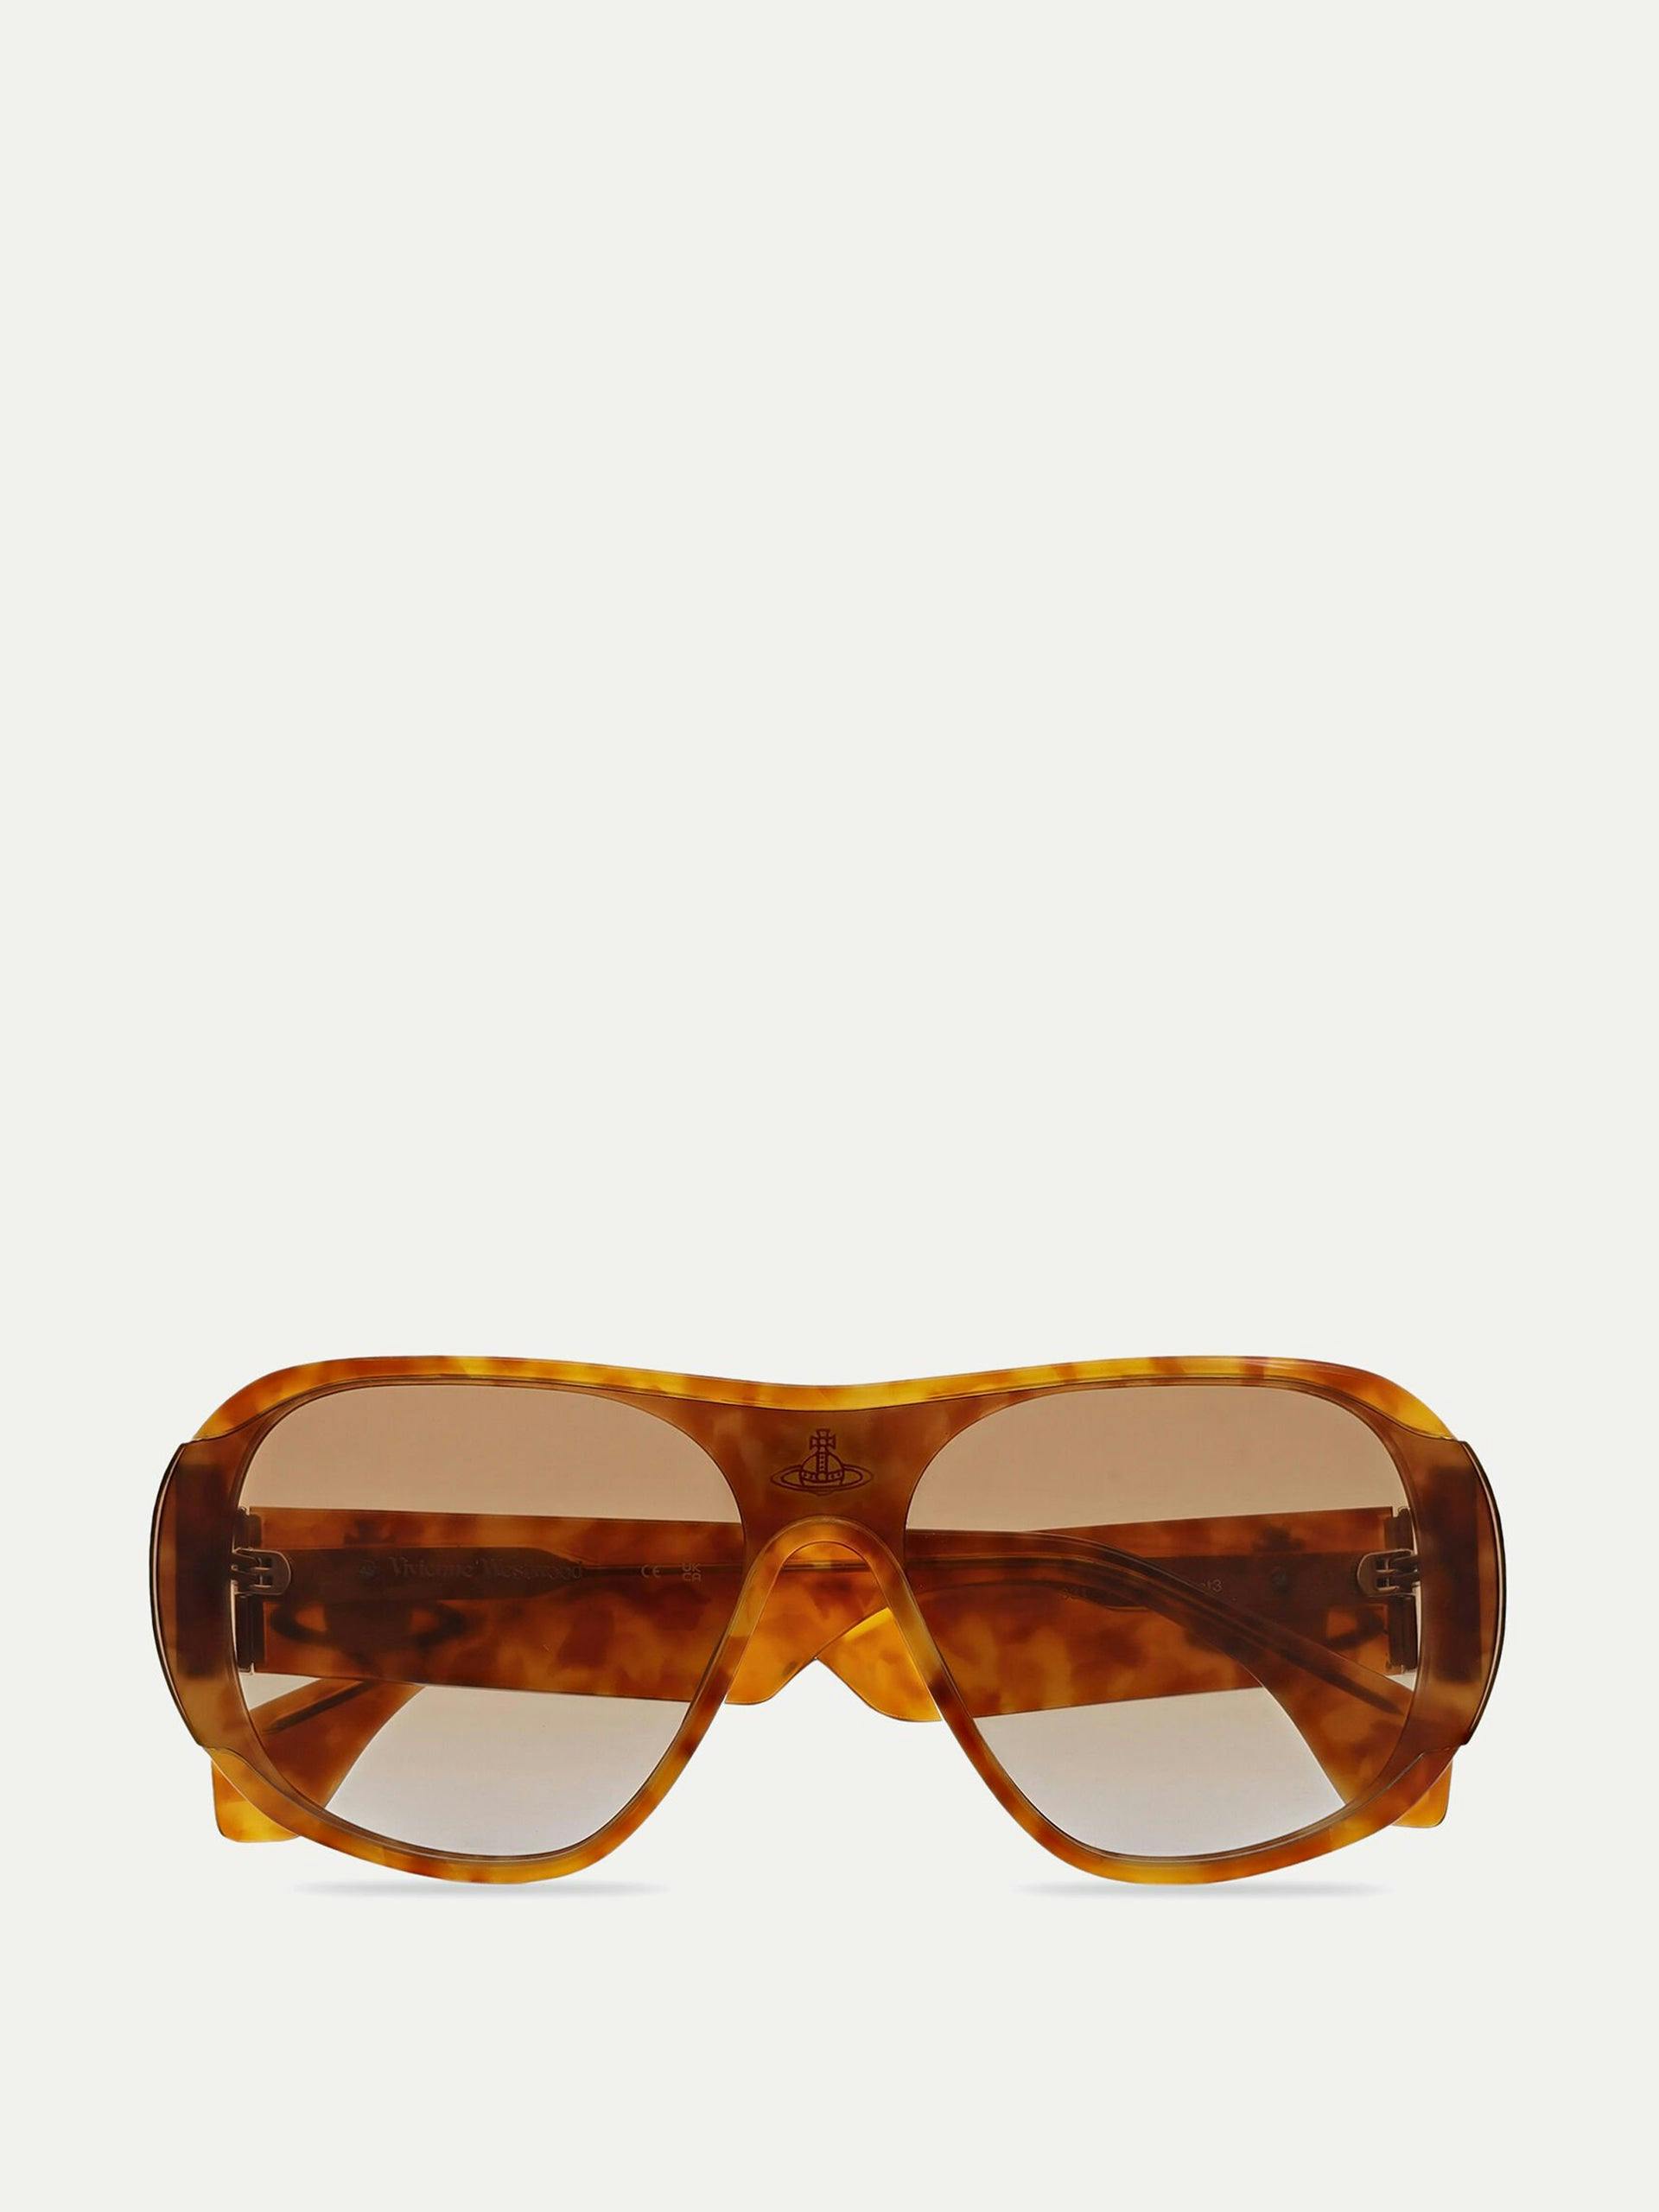 Amber tortoiseshell-frame sunglasses